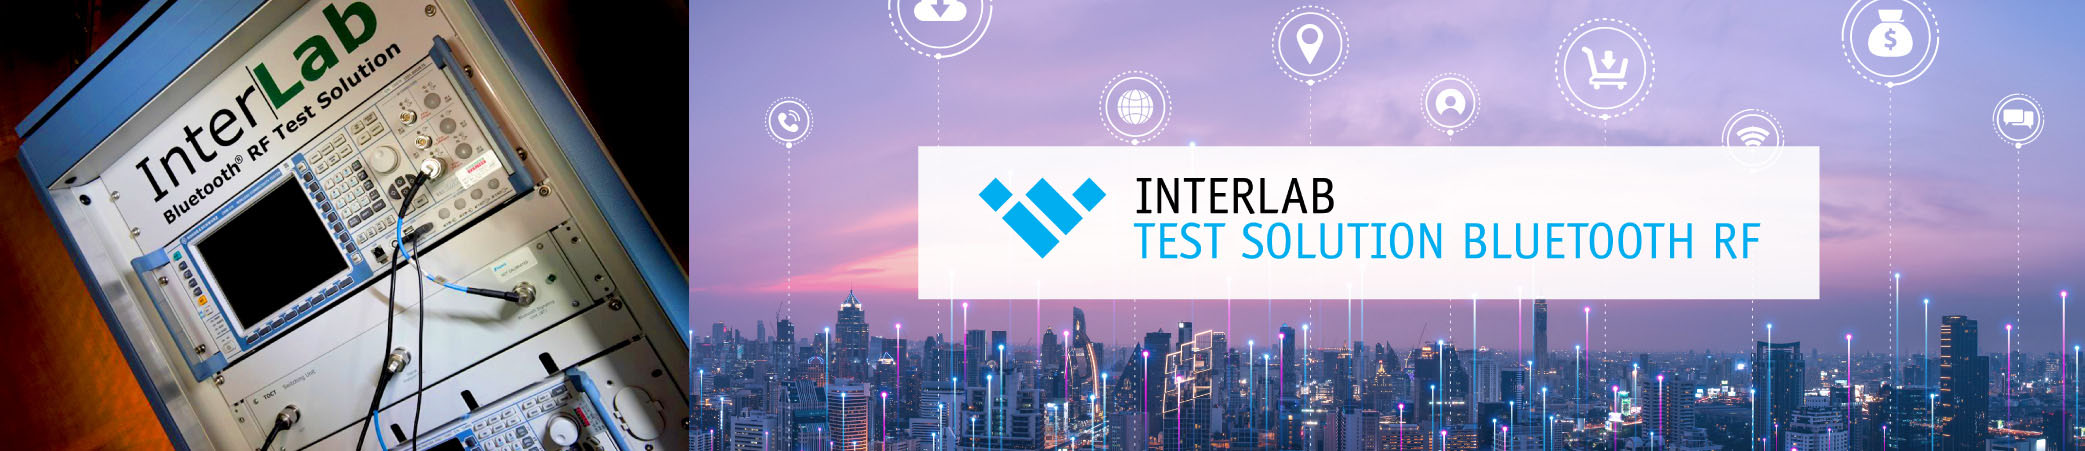 Interlab test solution bluetooth w/ logo